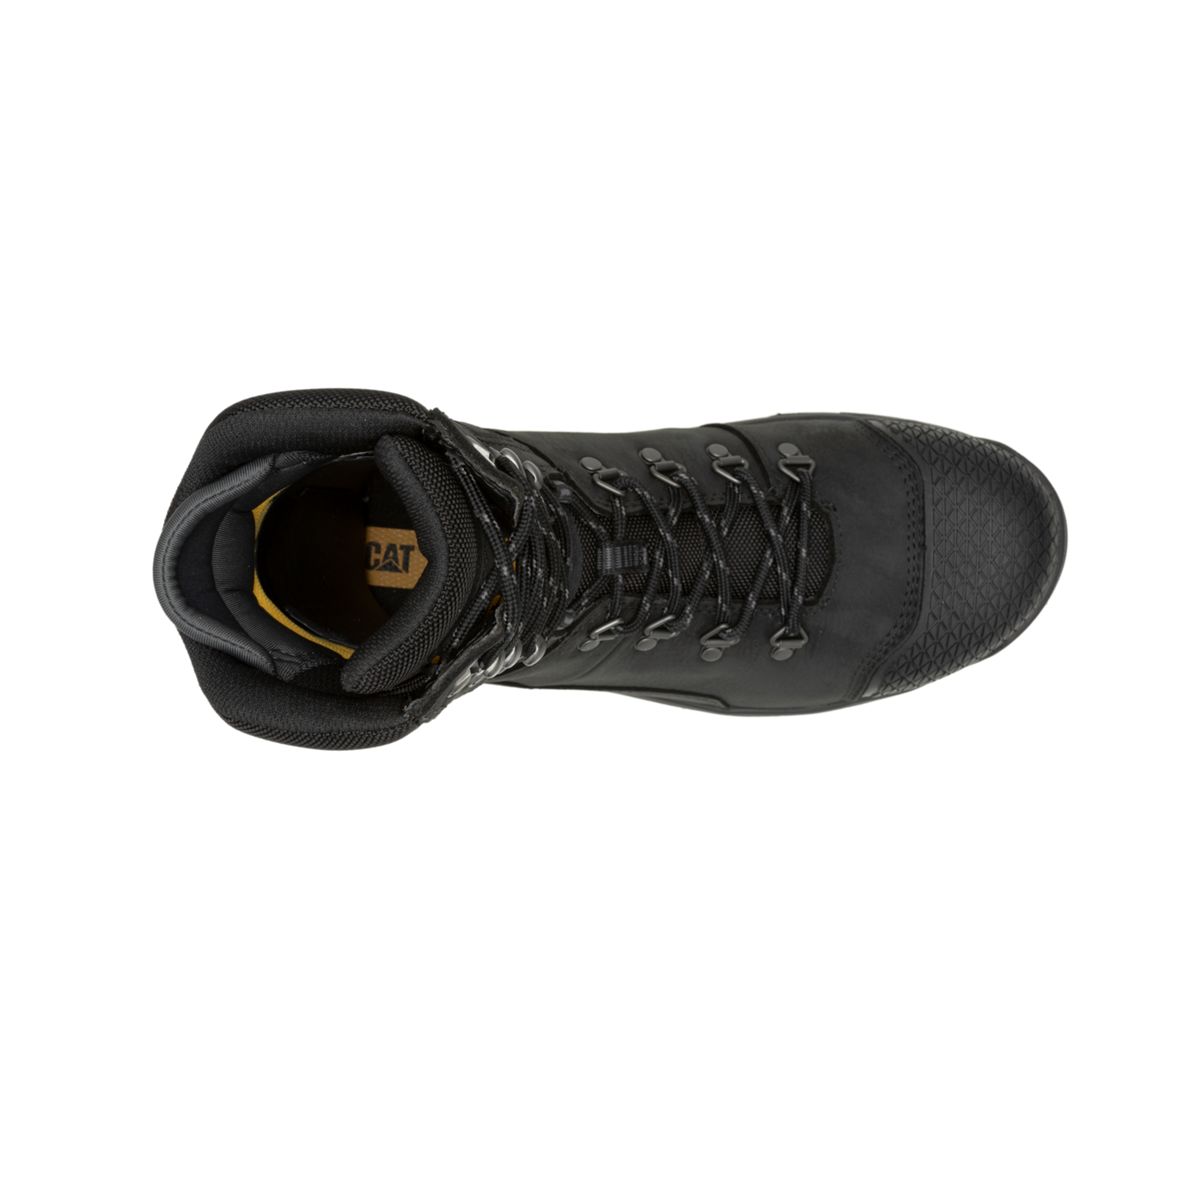 Accomplice X 8" Waterproof Steel Toe Work Boot, Black, dynamic 7